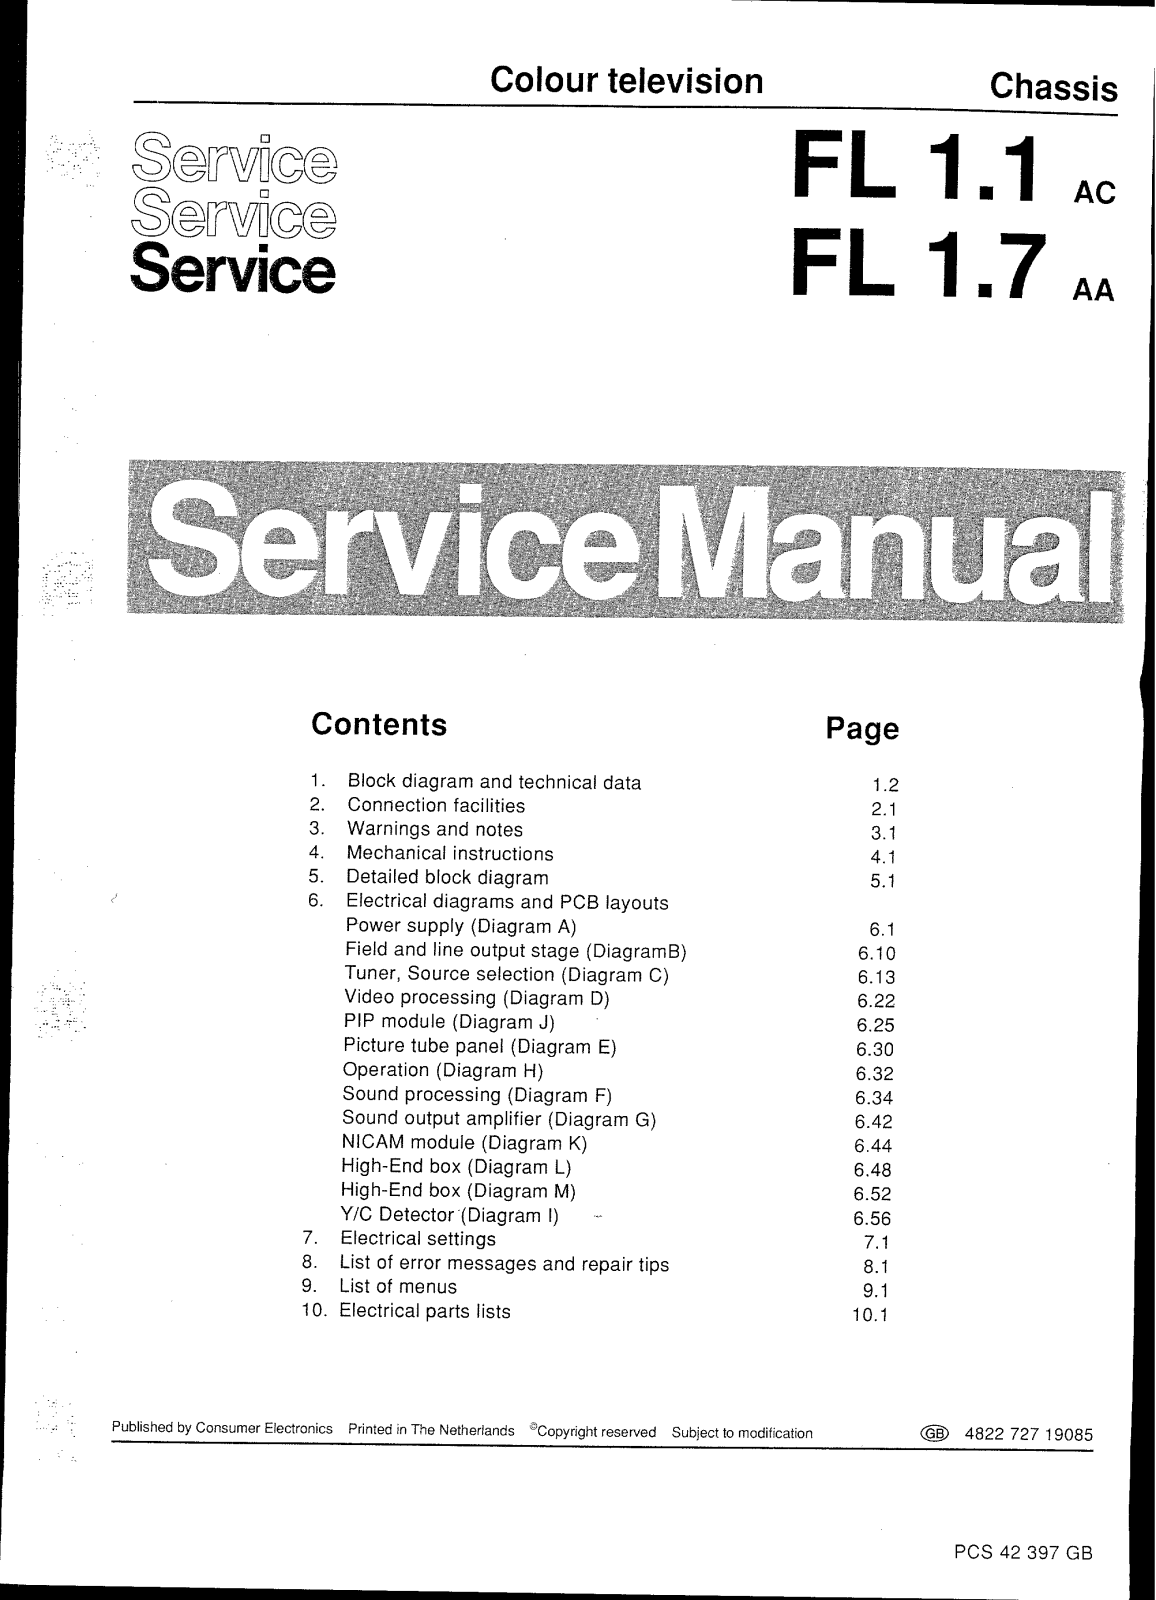 Philips FL1.7 AA, FL1.7, FL1.1 AC, FL1.1 Service Manual